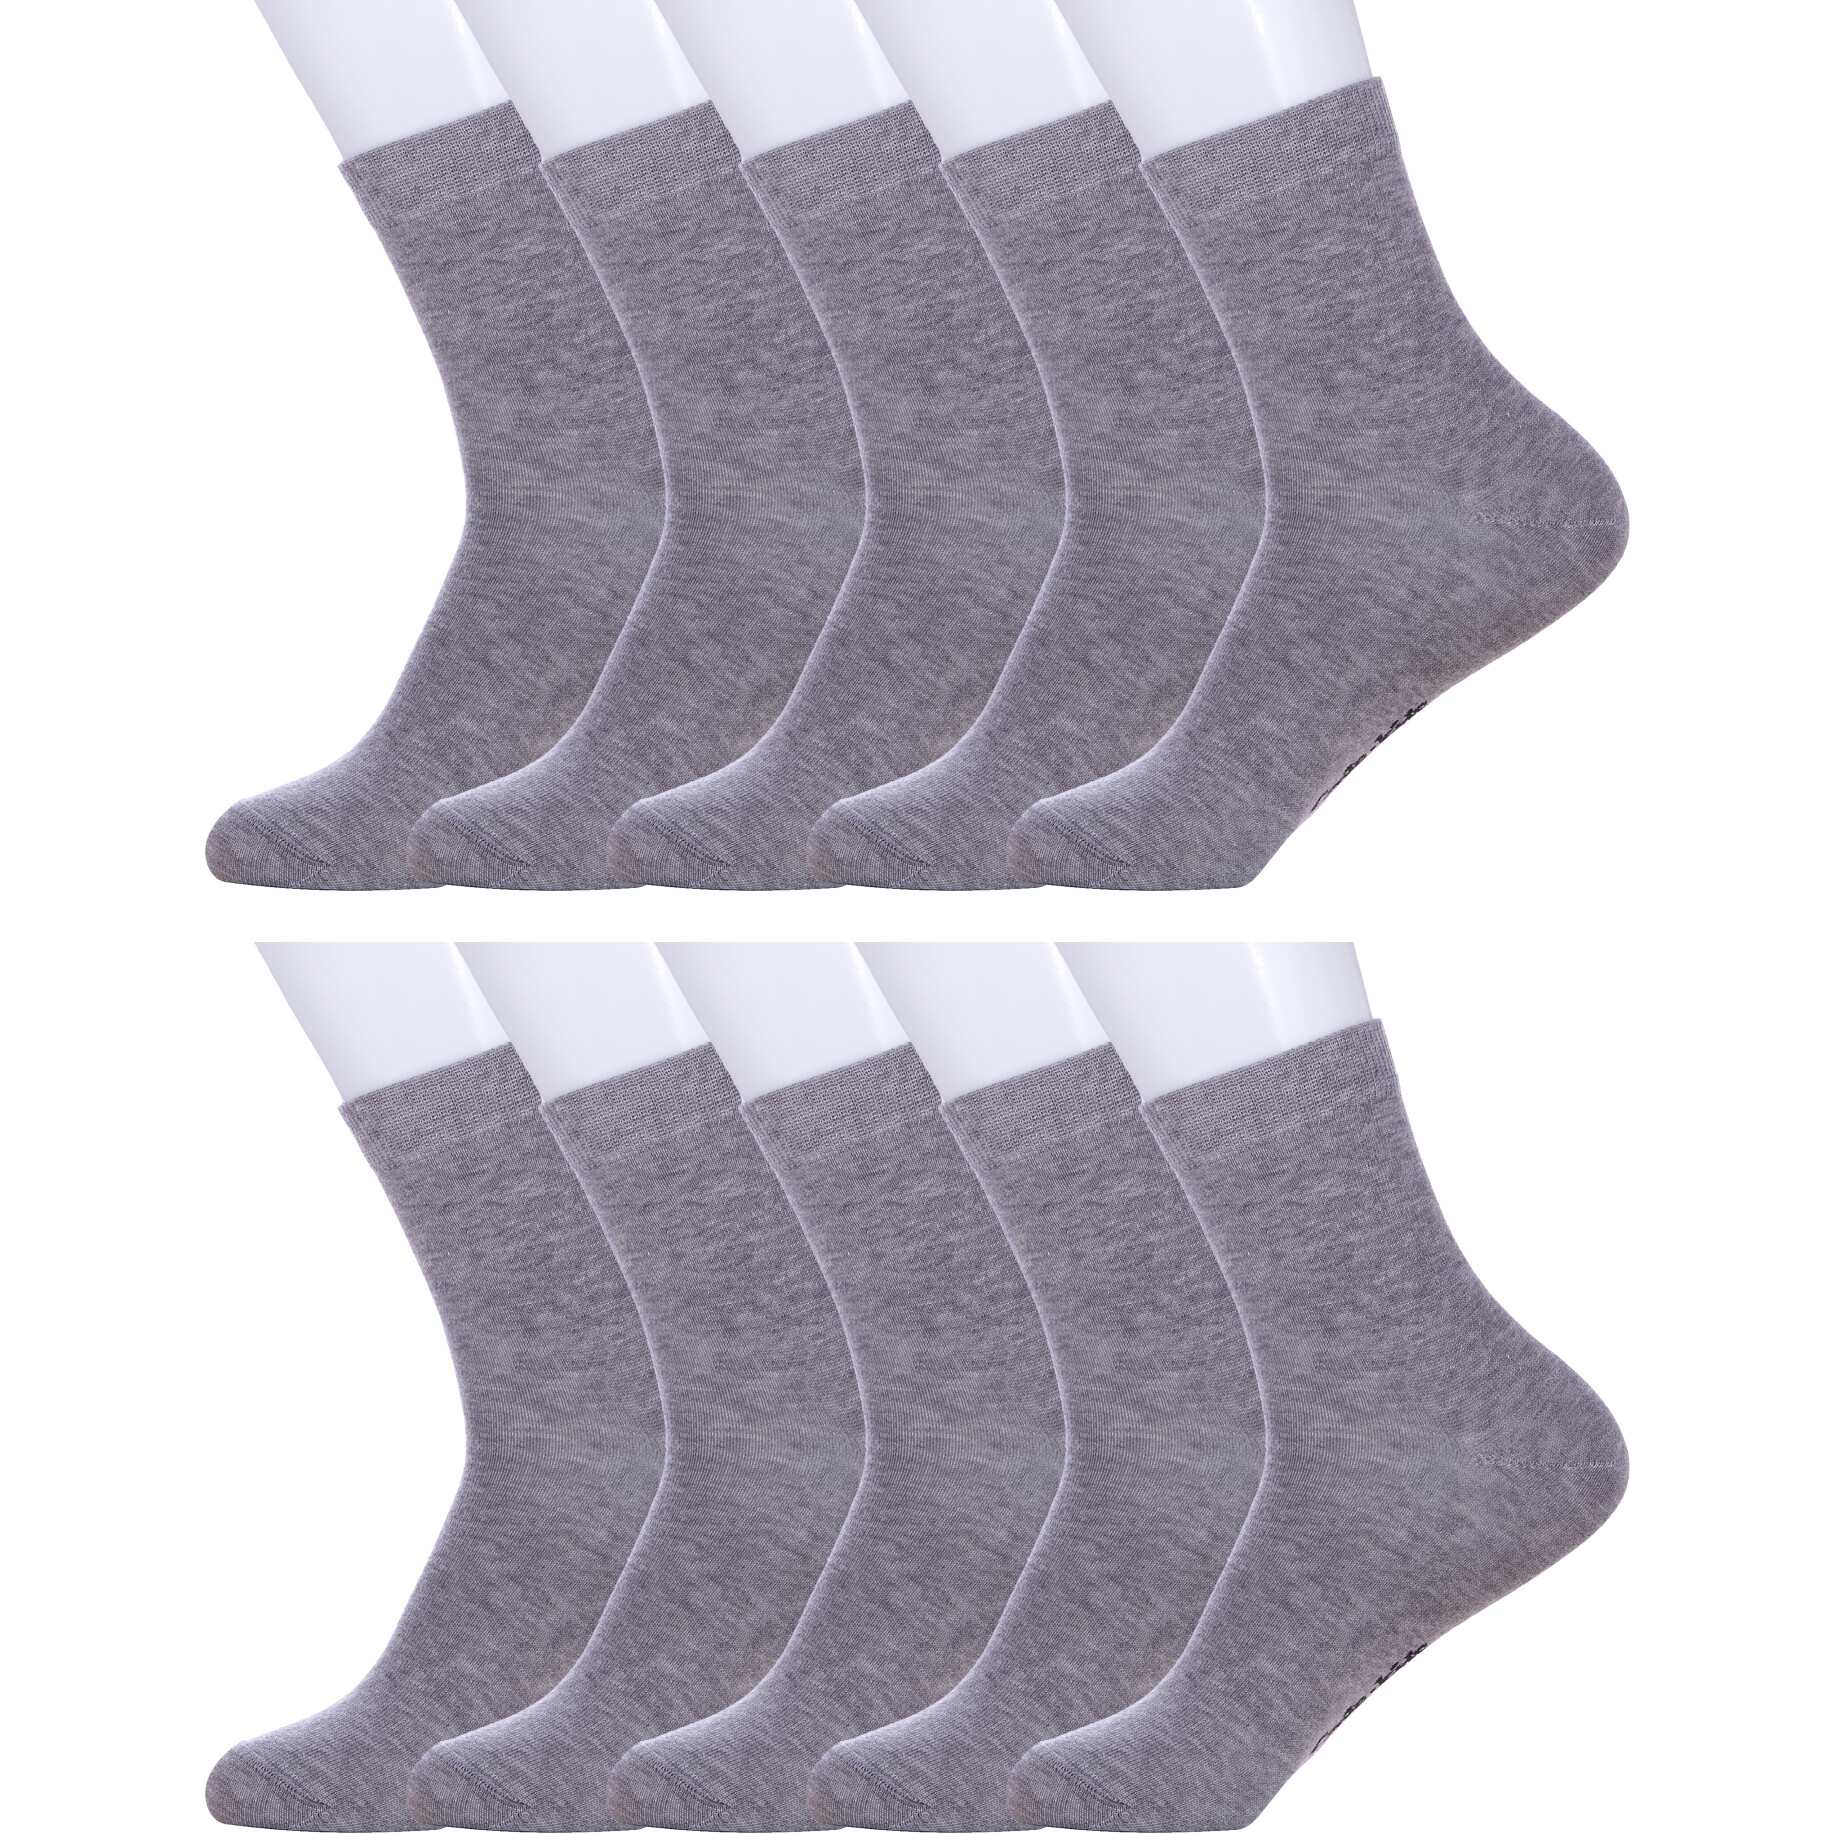 Носки детские NOSMAG 10-5С-11СП, рис. 000, серые, 14 носки унисекс серые с рисунком в виде драника и сметанки